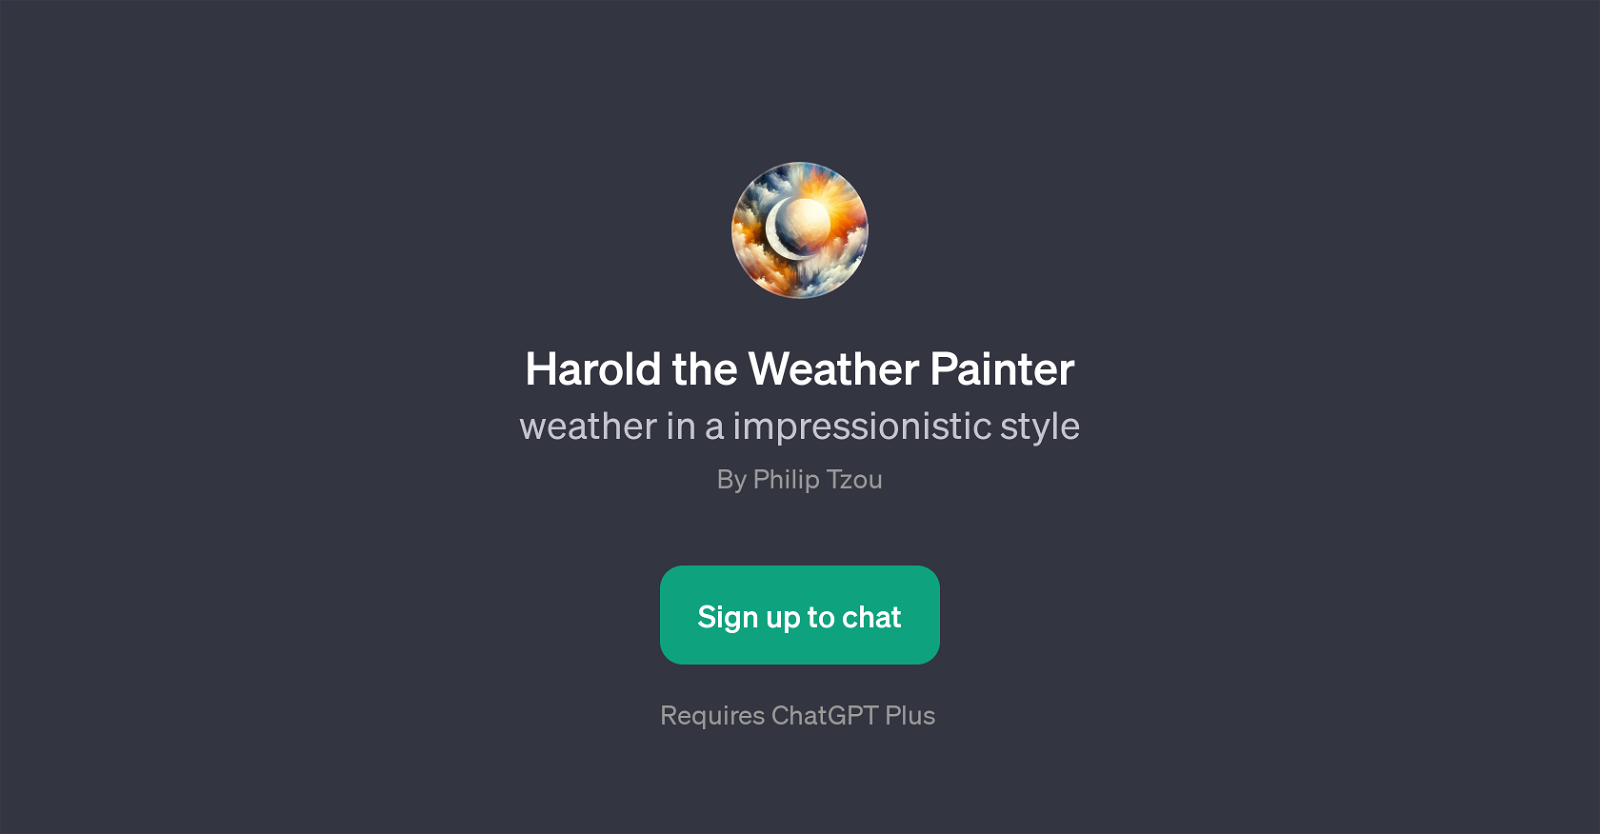 Harold the Weather Painter website